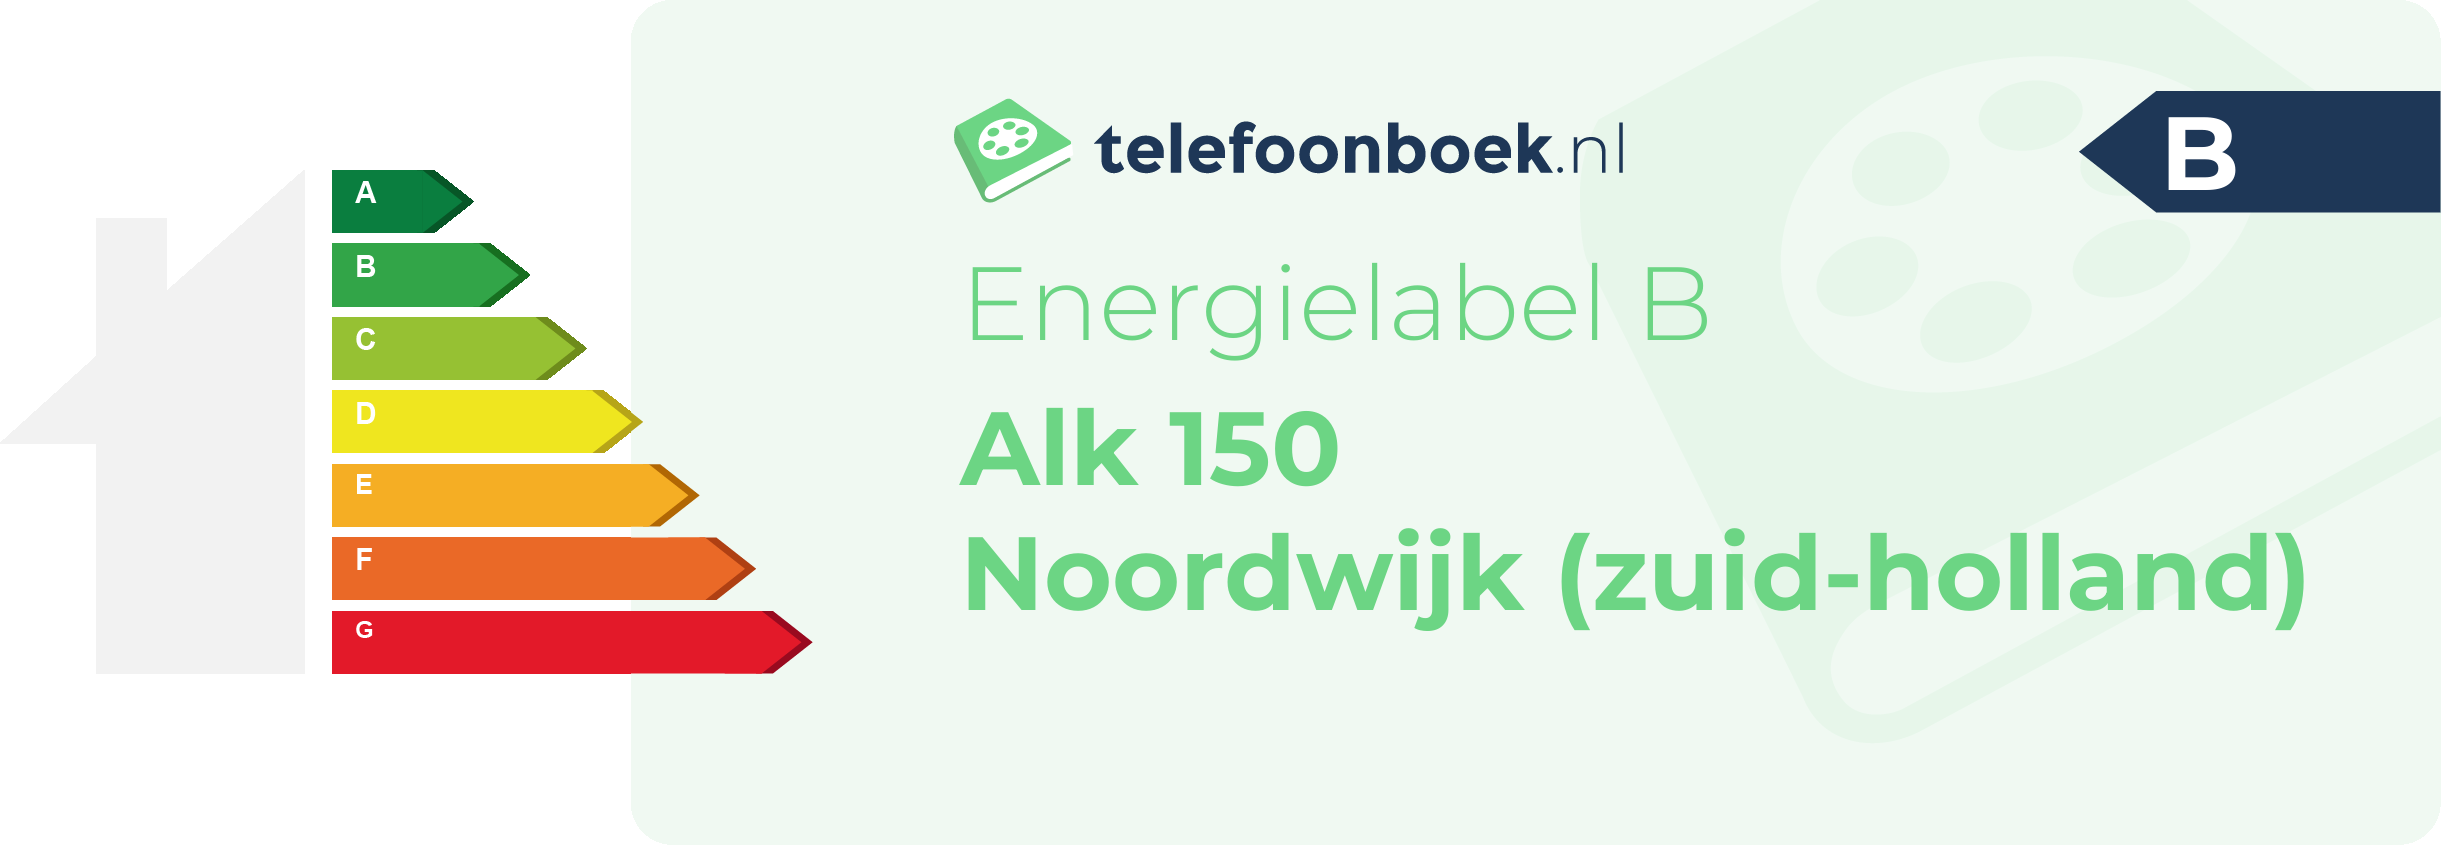 Energielabel Alk 150 Noordwijk (Zuid-Holland)